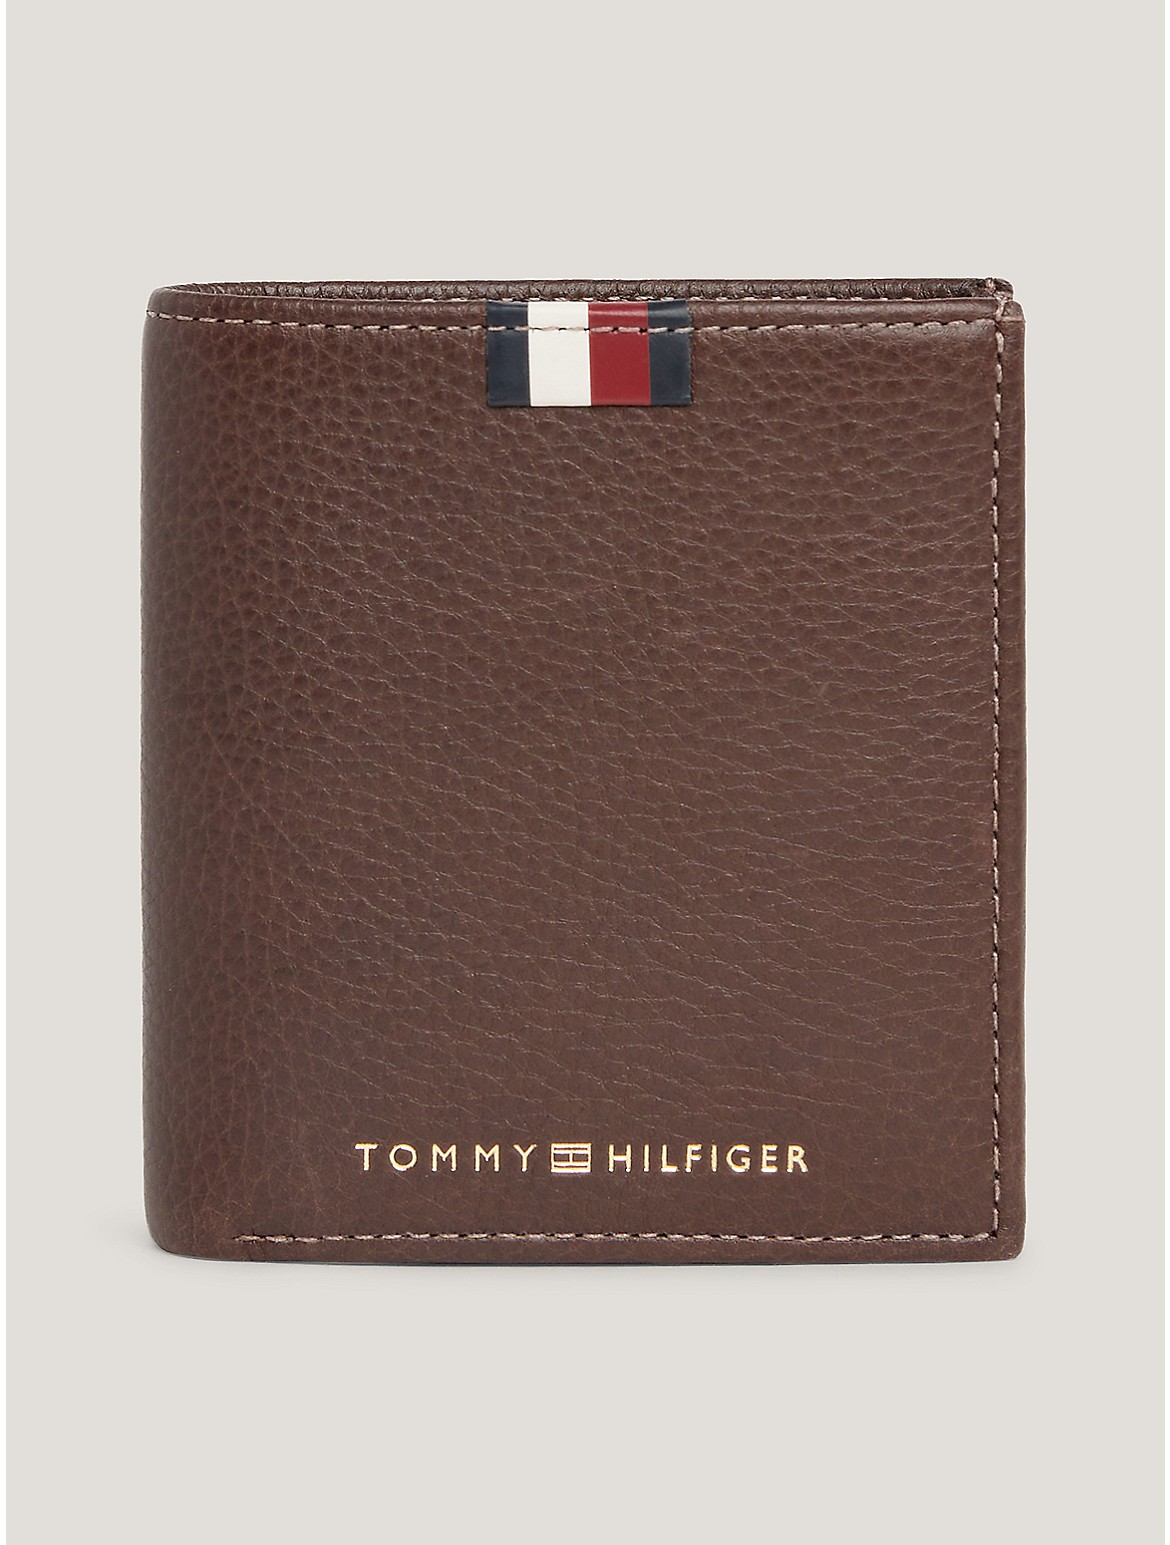 Tommy Hilfiger Men's Flag Leather Bifold Wallet - Brown